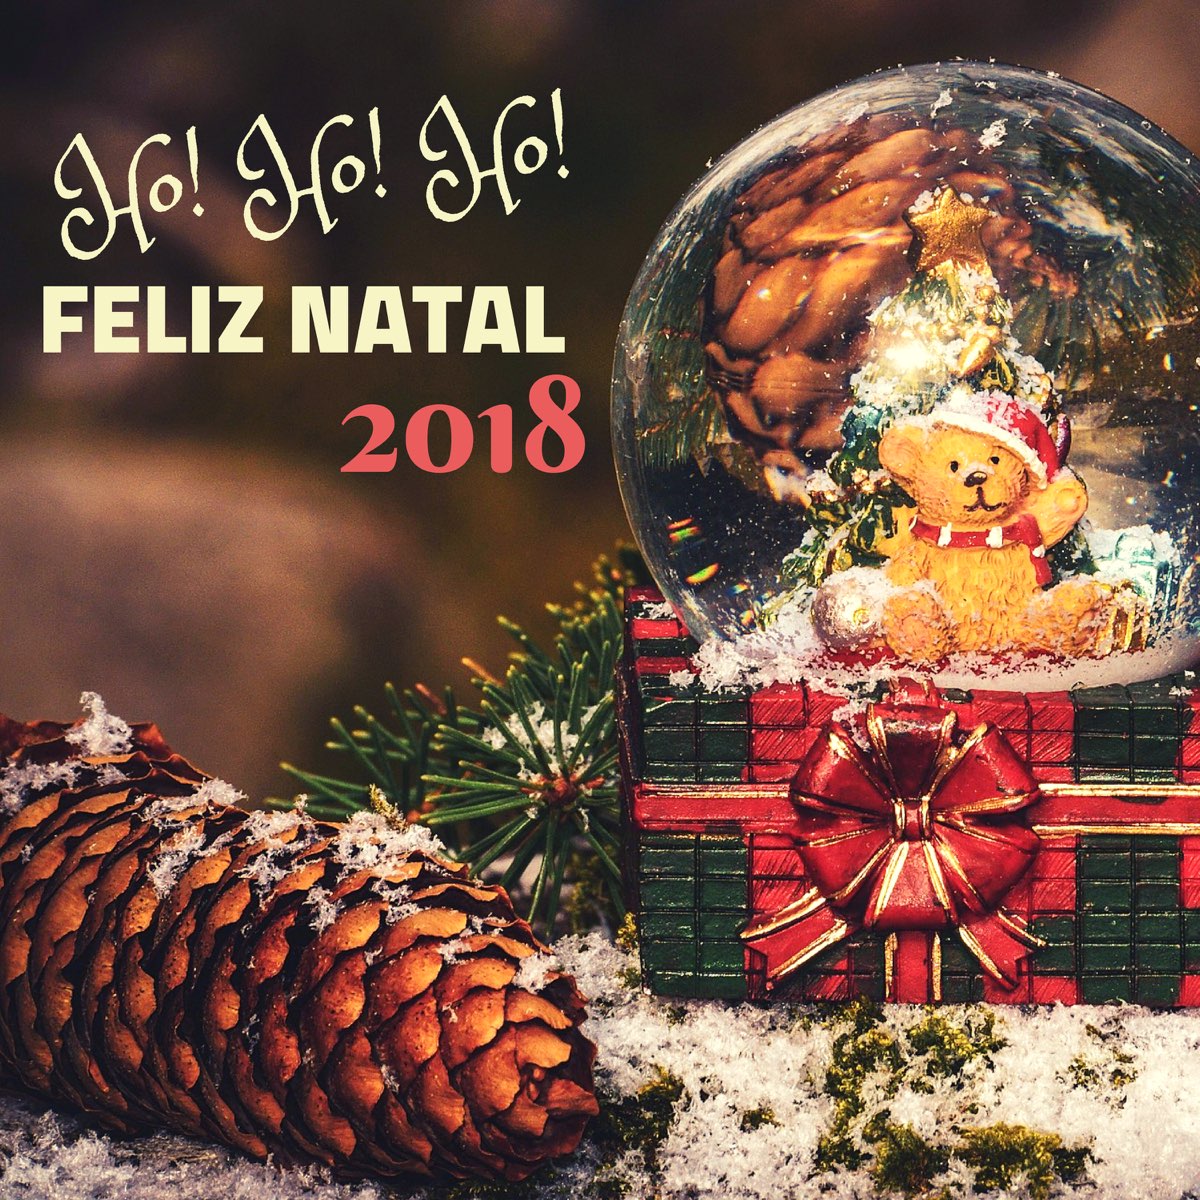 Ho! Ho! Ho! Feliz Natal 2018 – Música de Natal para Crianças e Adultos,  Coleção de Cantos Natalinos - Album by César Natal